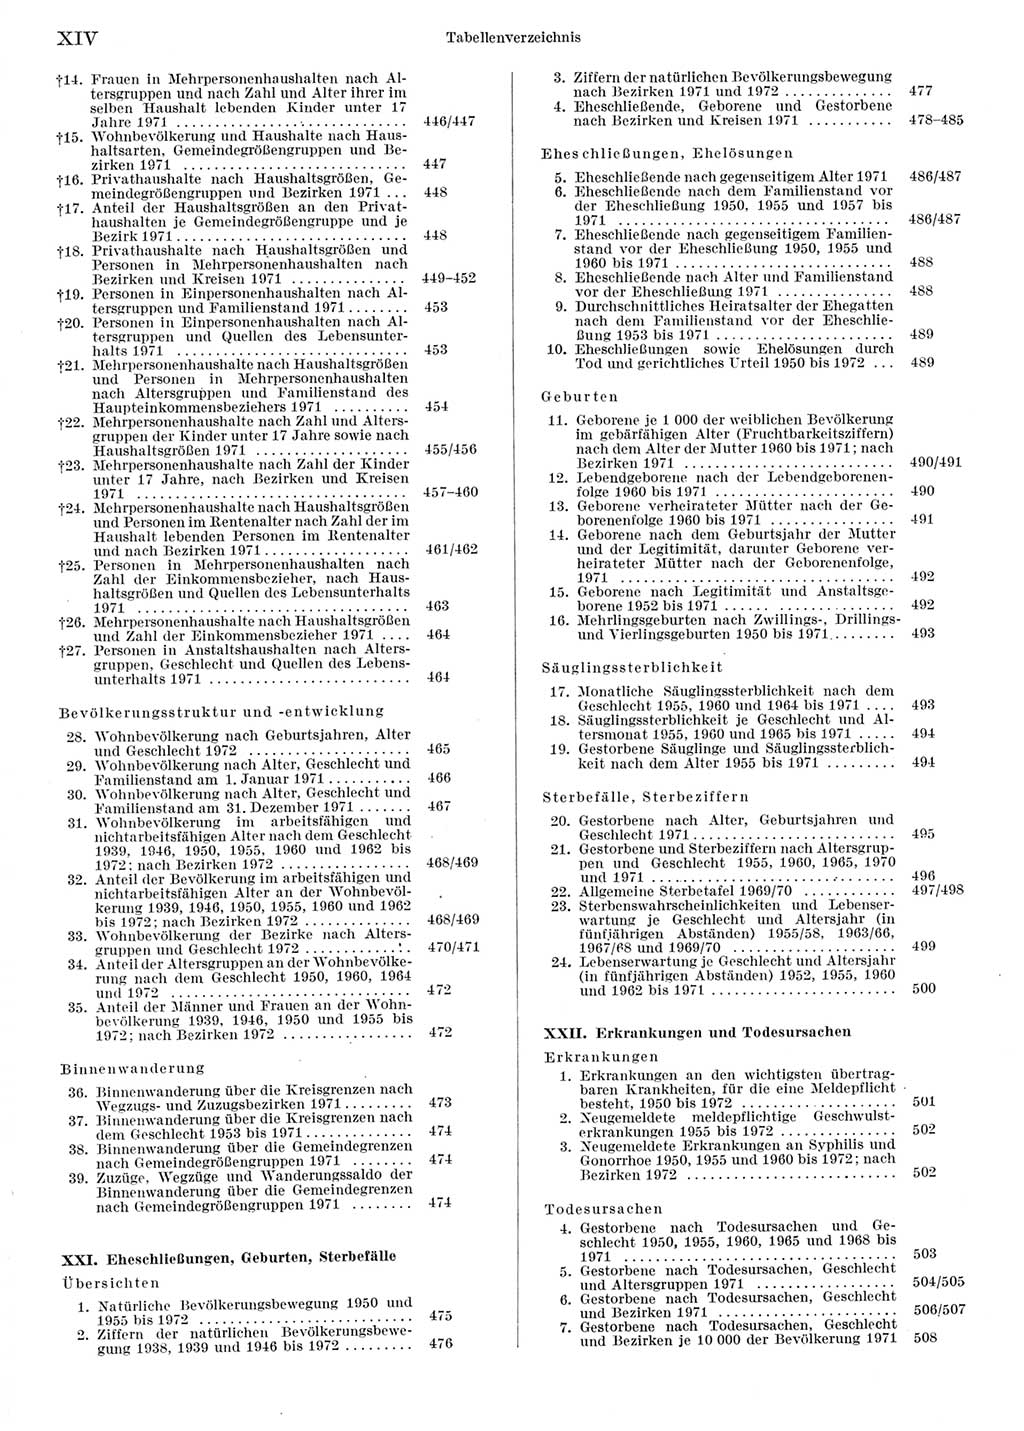 Statistisches Jahrbuch der Deutschen Demokratischen Republik (DDR) 1973, Seite 14 (Stat. Jb. DDR 1973, S. 14)